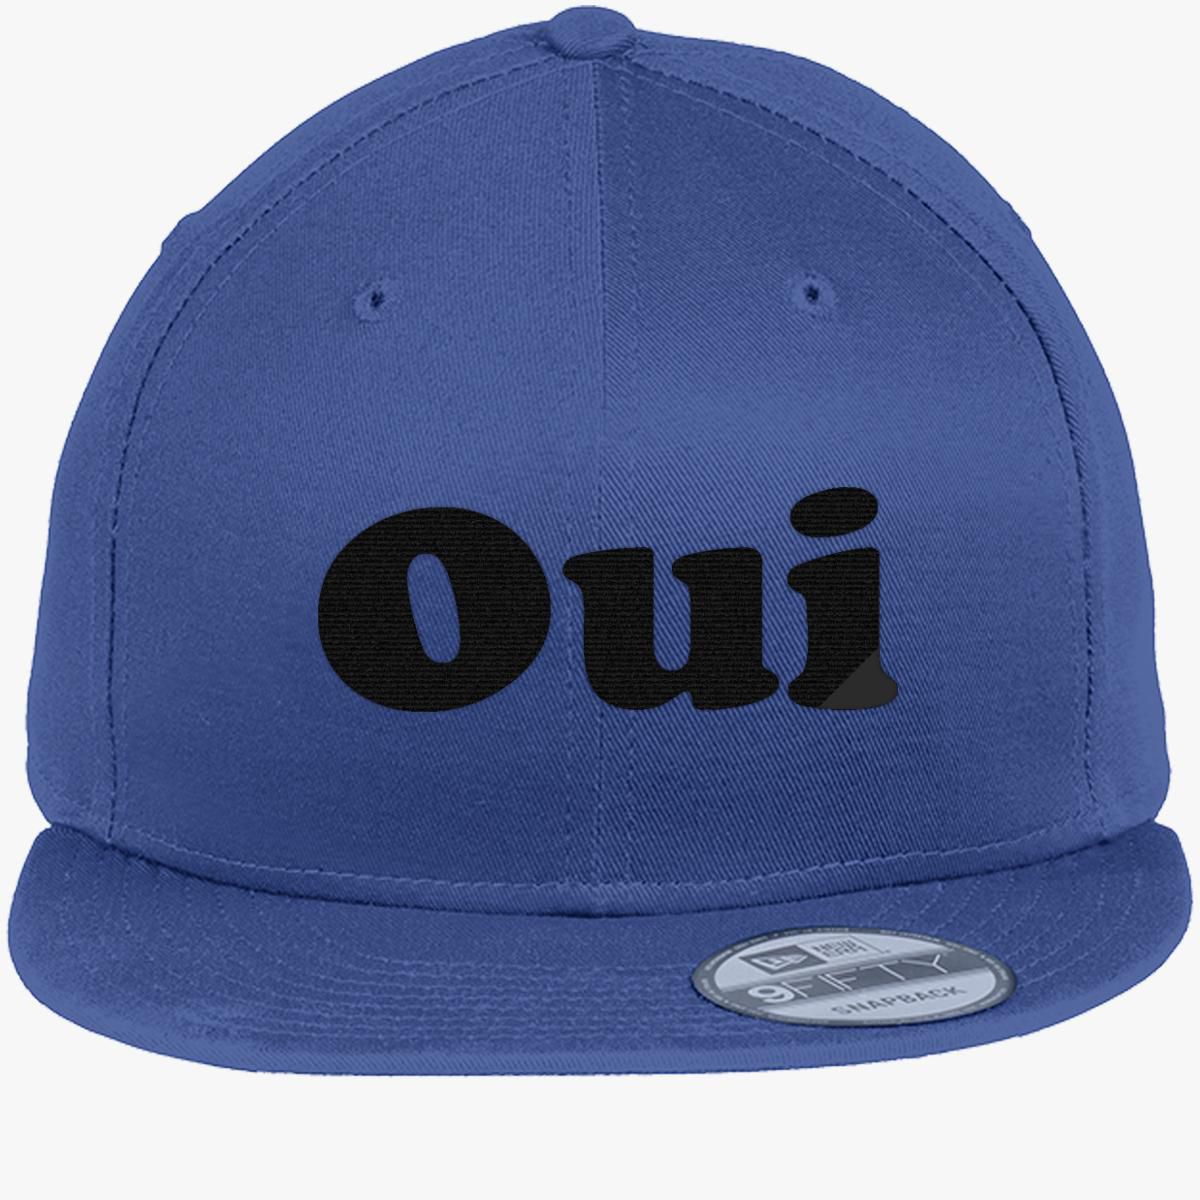 Oui and Non New Era Snapback Cap (Embroidered) - Customon